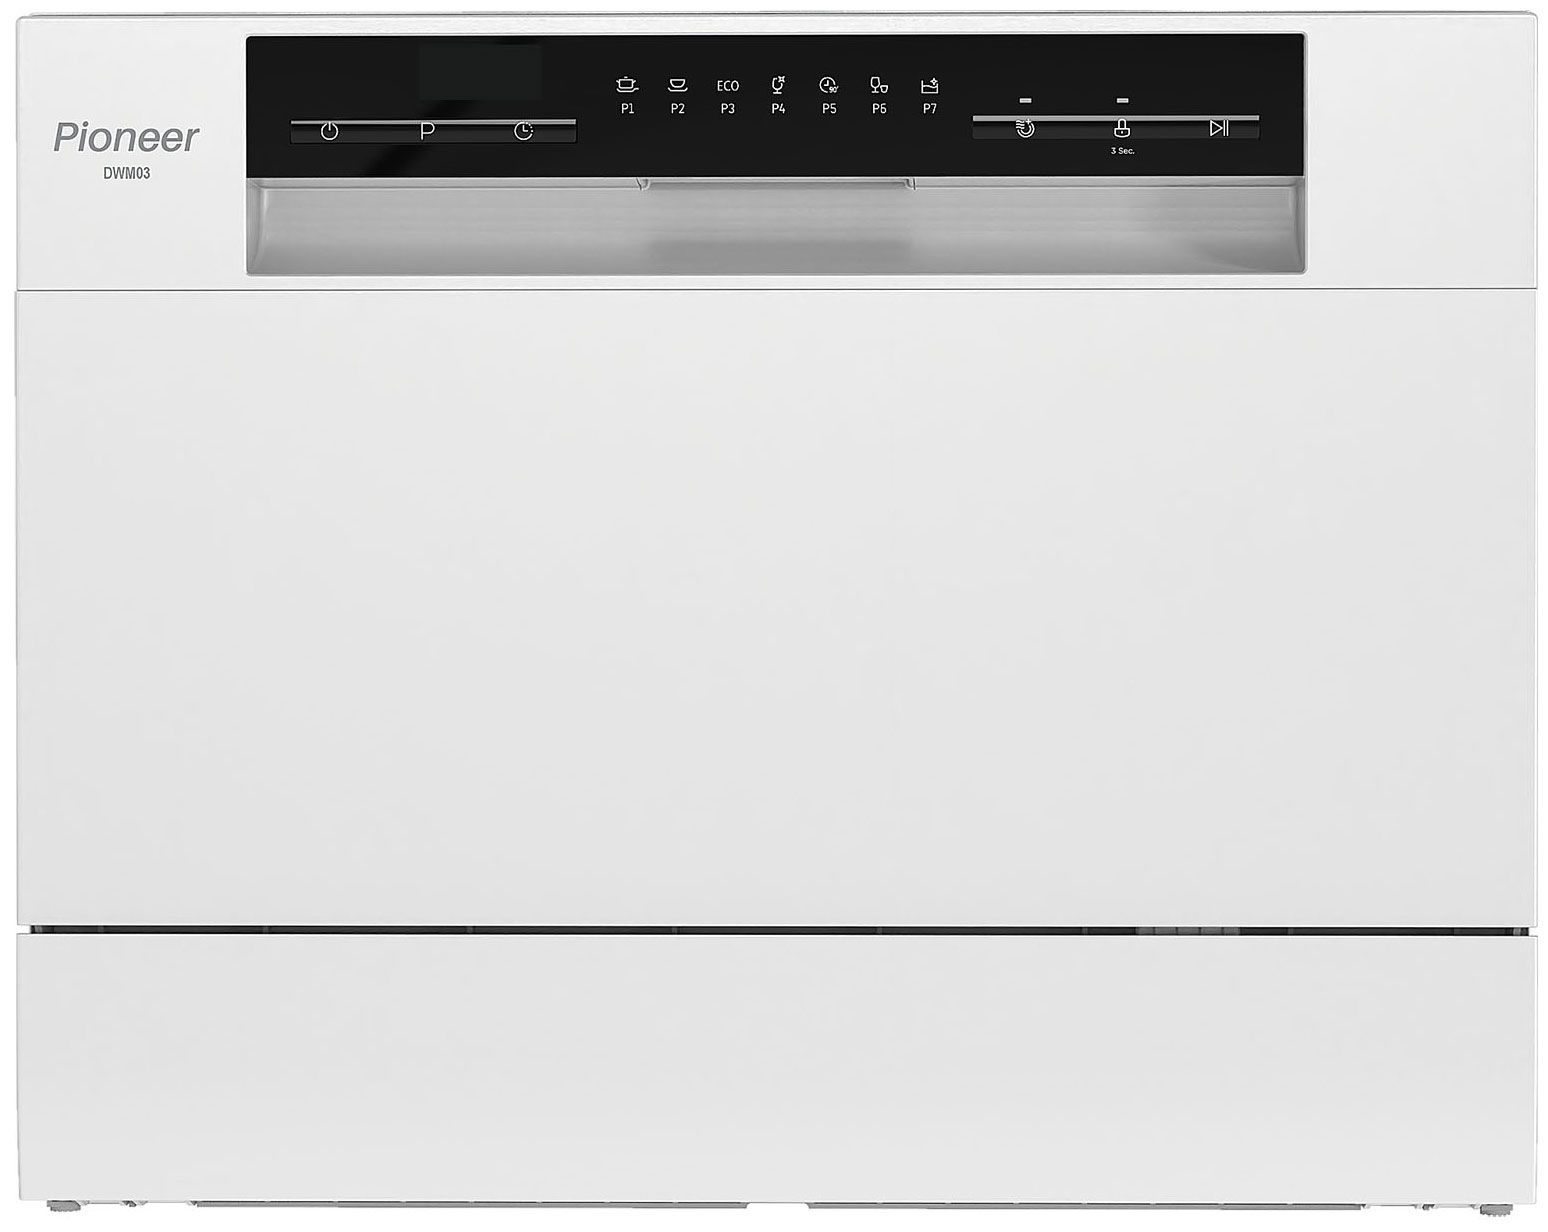 Компактная посудомоечная машина Pioneer DWM03